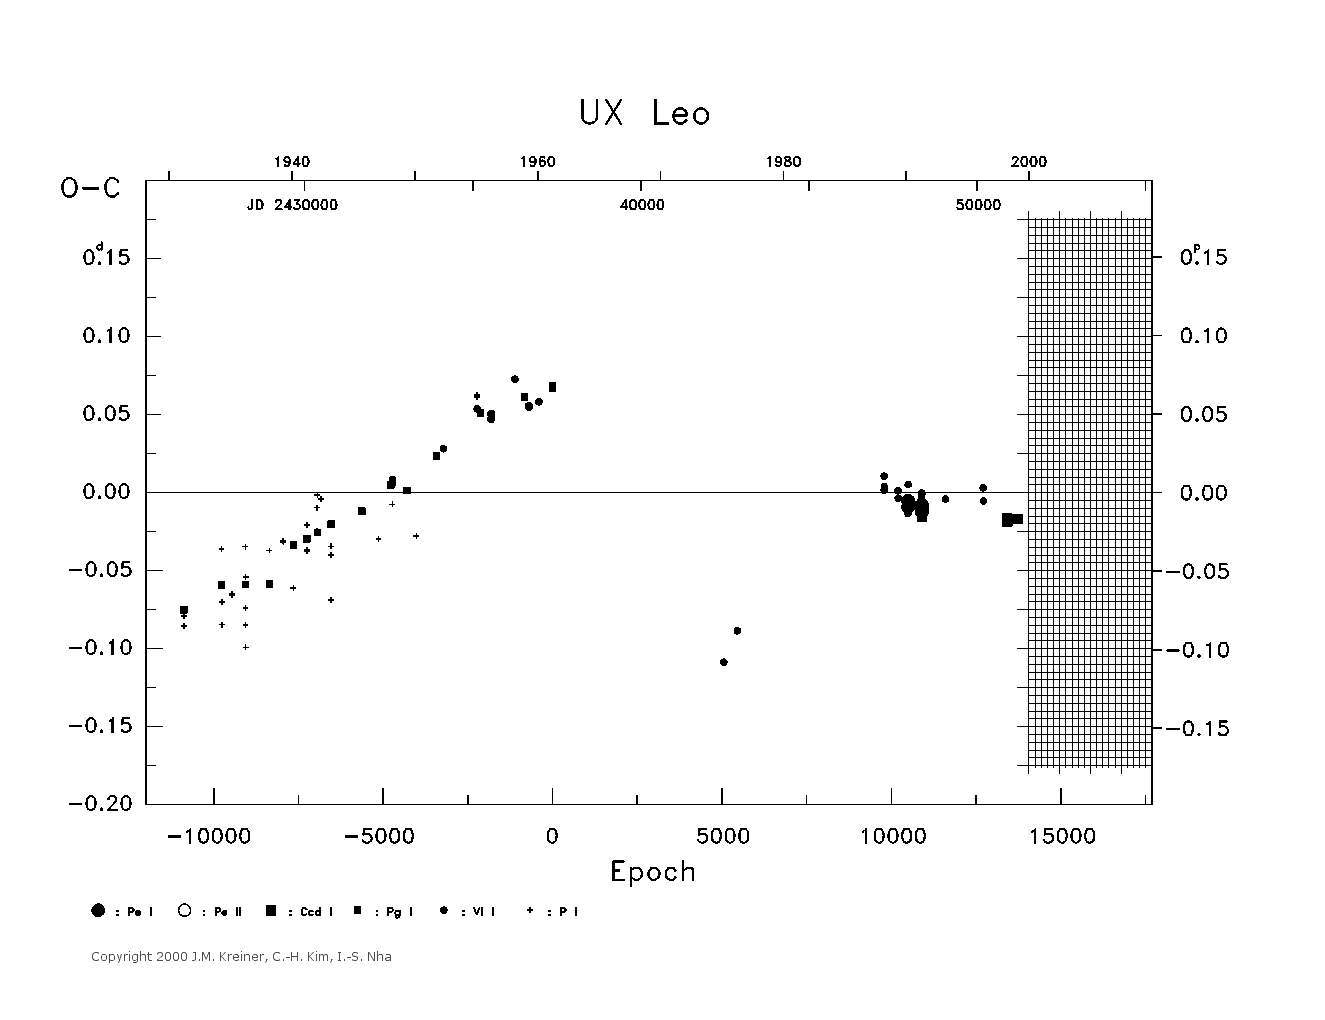 [IMAGE: large UX LEO O-C diagram]